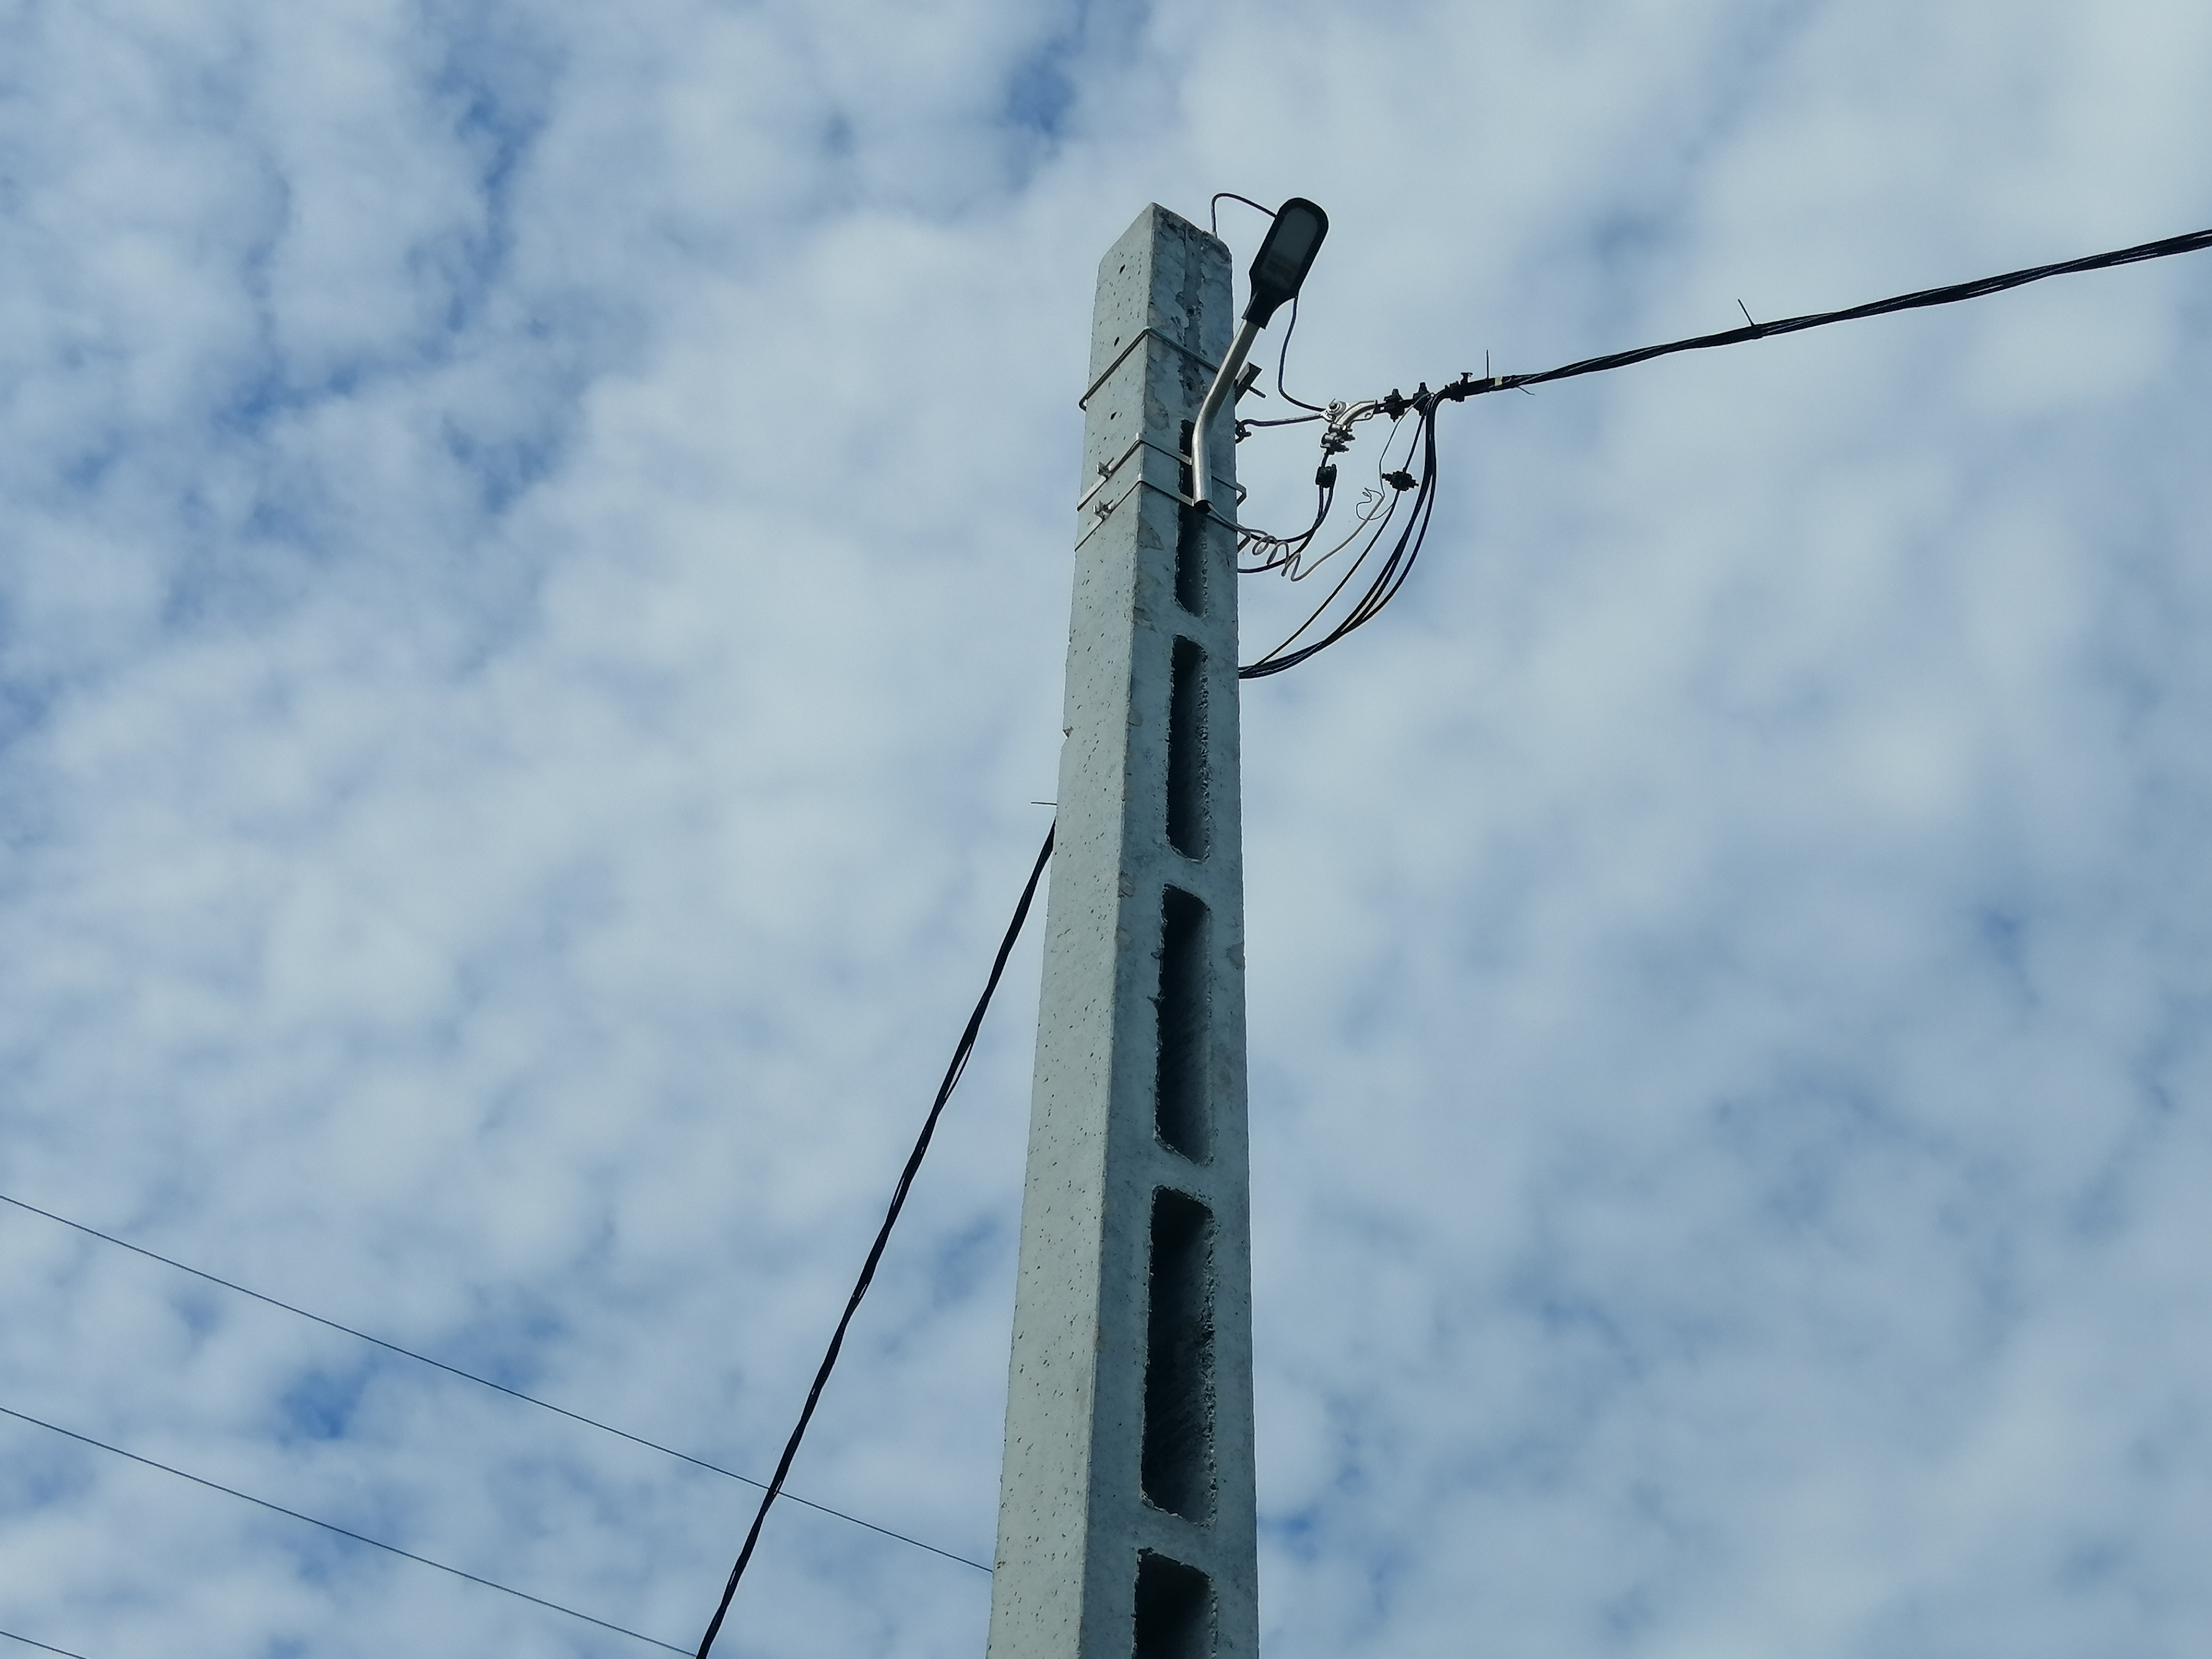 COMUNICAT DE PRESA: Intreruperea energiei electrice in comuna Cristesti